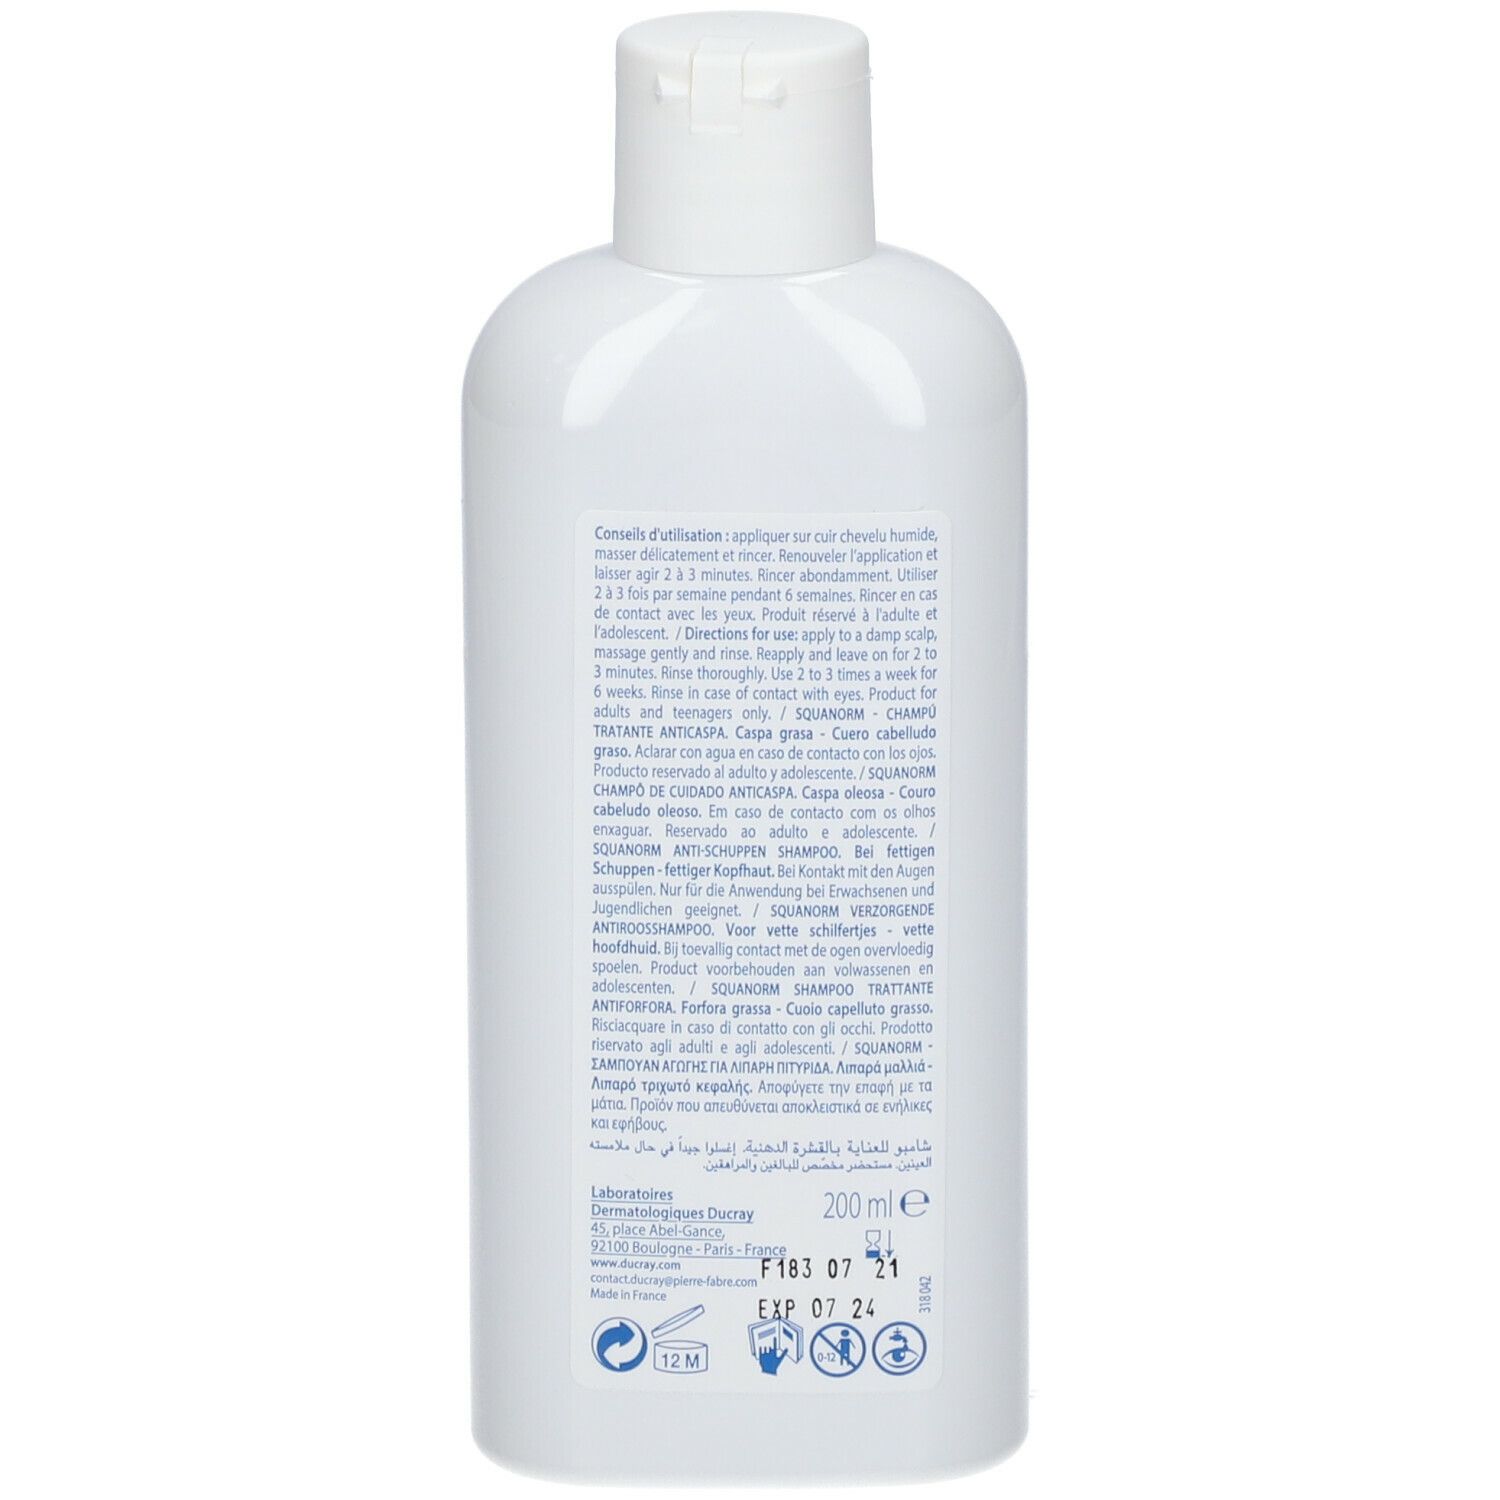 DUCRAY Squanorm Shampoo Trattante Anti-Forfora Grassa